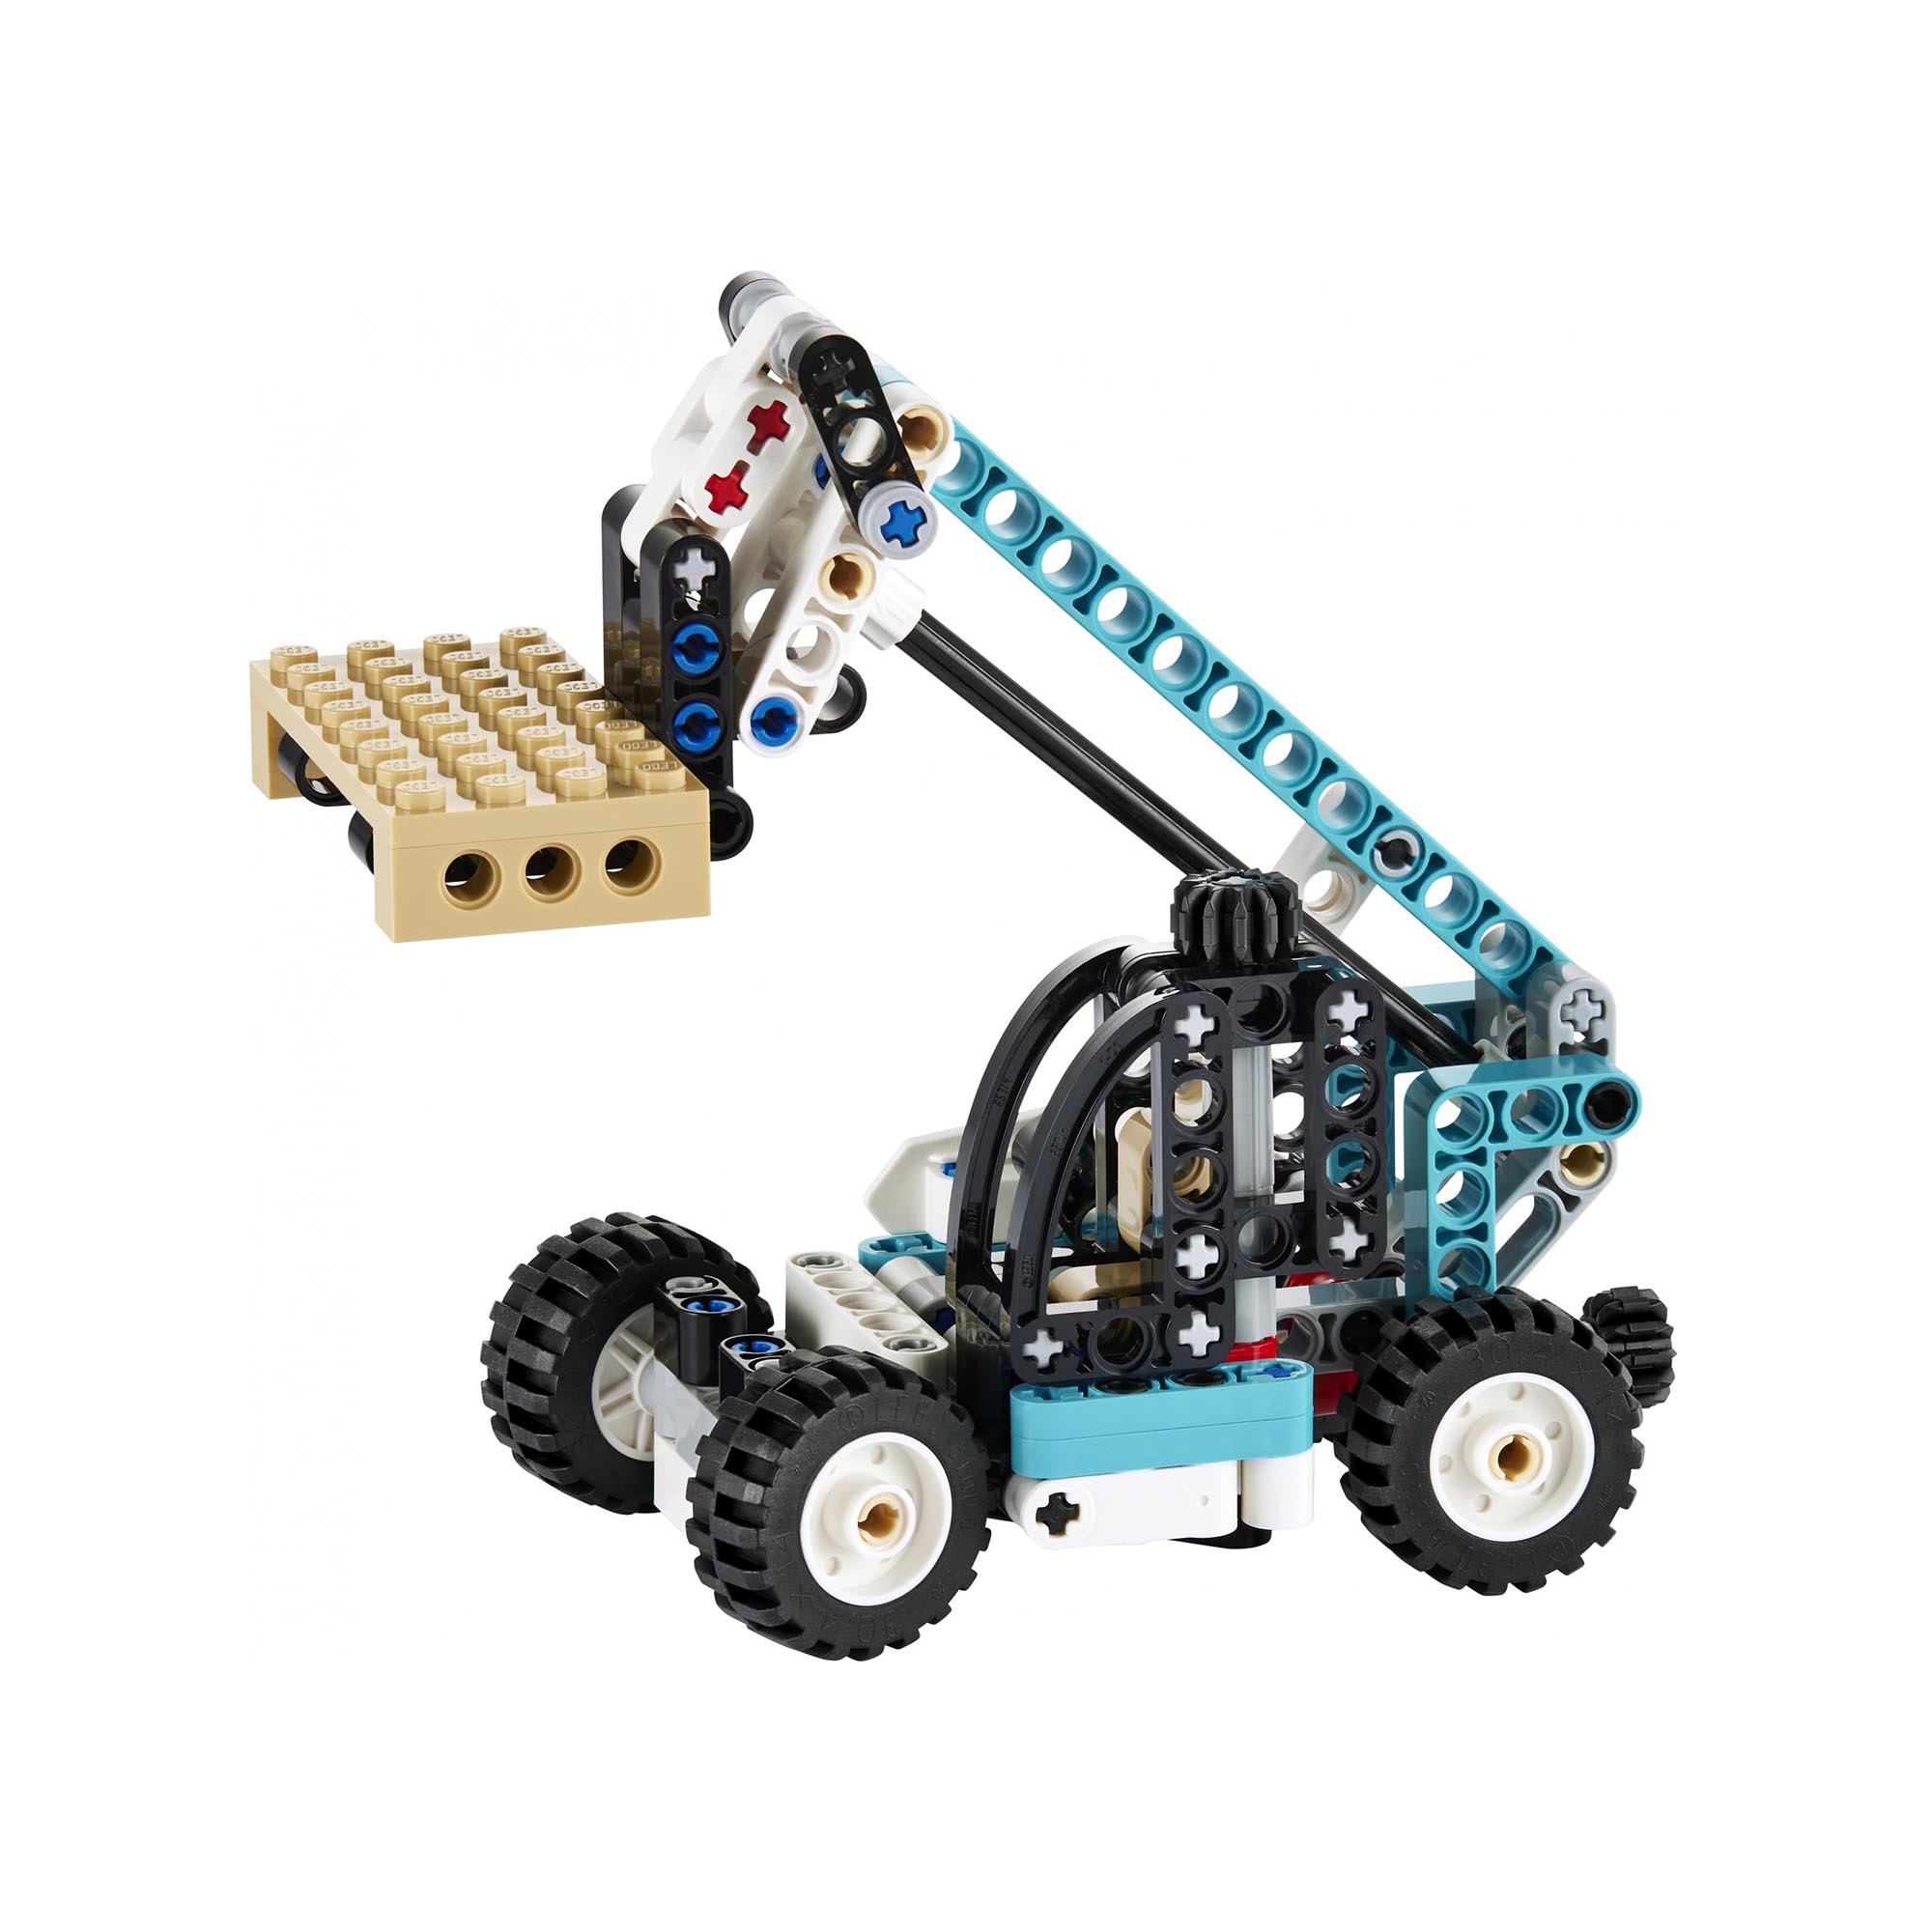 LEGO 42133 Technic Sollevatore Telescopico, Set 2in1 Camion Giocattolo e Carrell 42133, , large